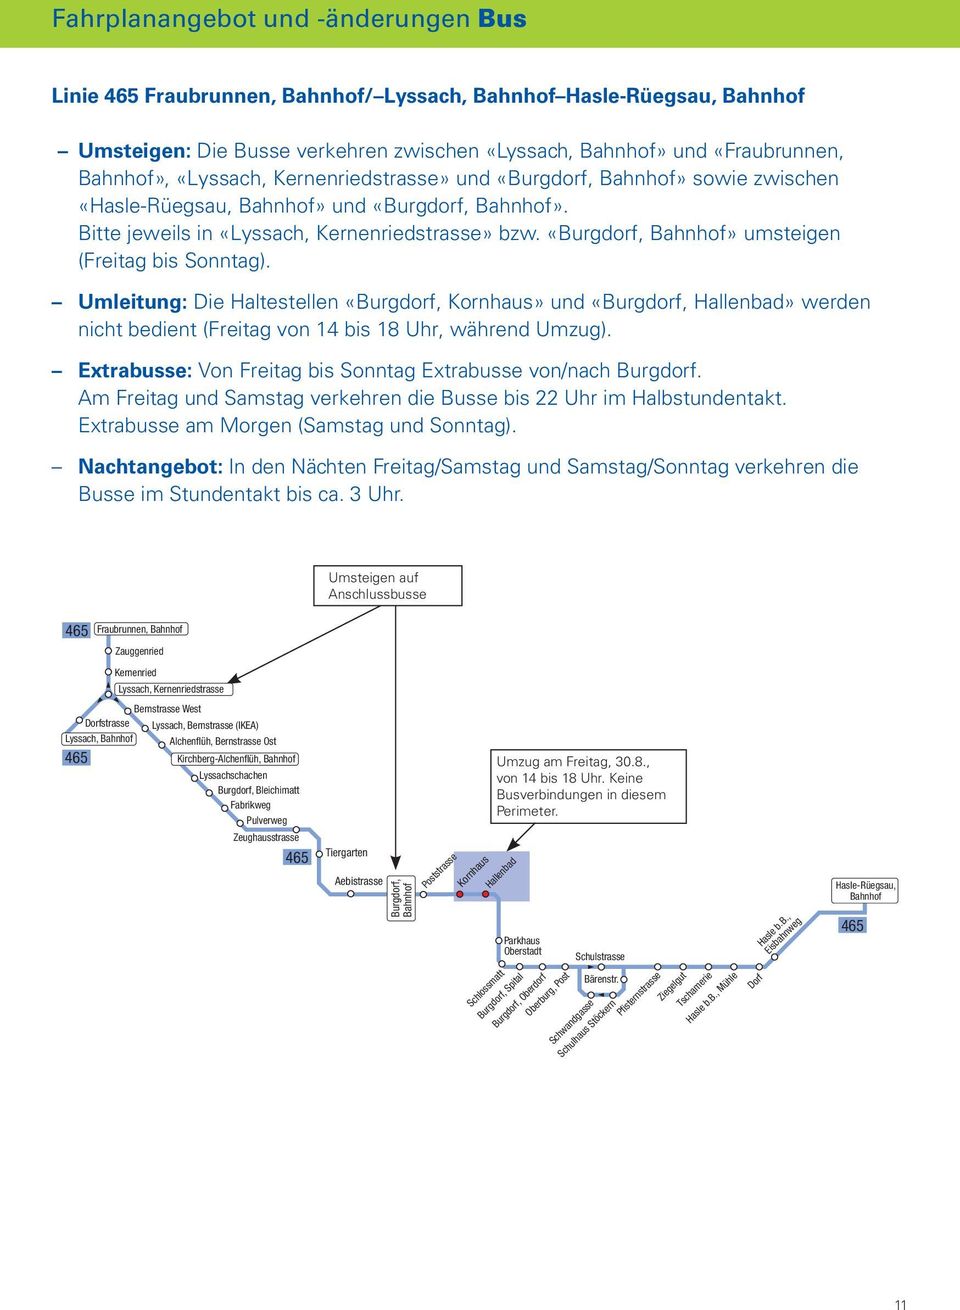 Umleitung: Die Haltestellen «Burgdorf, Kornhaus» und «Burgdorf, Hallenbad» werden nicht bedient (Freitag von 14 bis 18 Uhr, während Umzug).